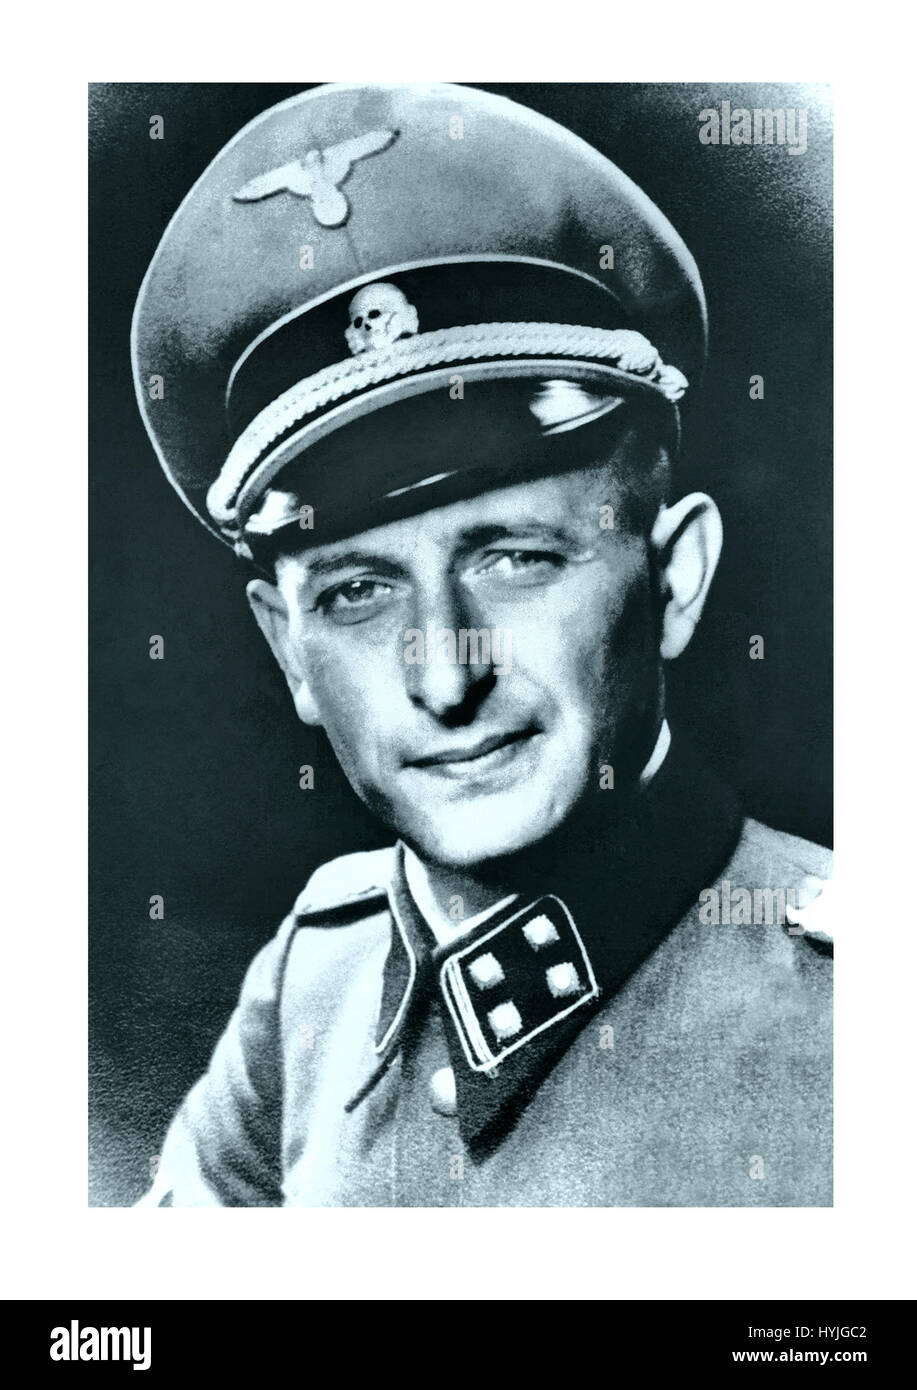 ADOLF EICHMANN Porträt des berüchtigten Adolf Eichmann- Nazi SS Obersturmbannführers (zum Tode verurteilter Kriegsverbrecher, der eine wichtige Rolle im Holocaust spielte) mit Militärmütze mit SS-Todeskopfabzeichen und Uniform Stockfoto